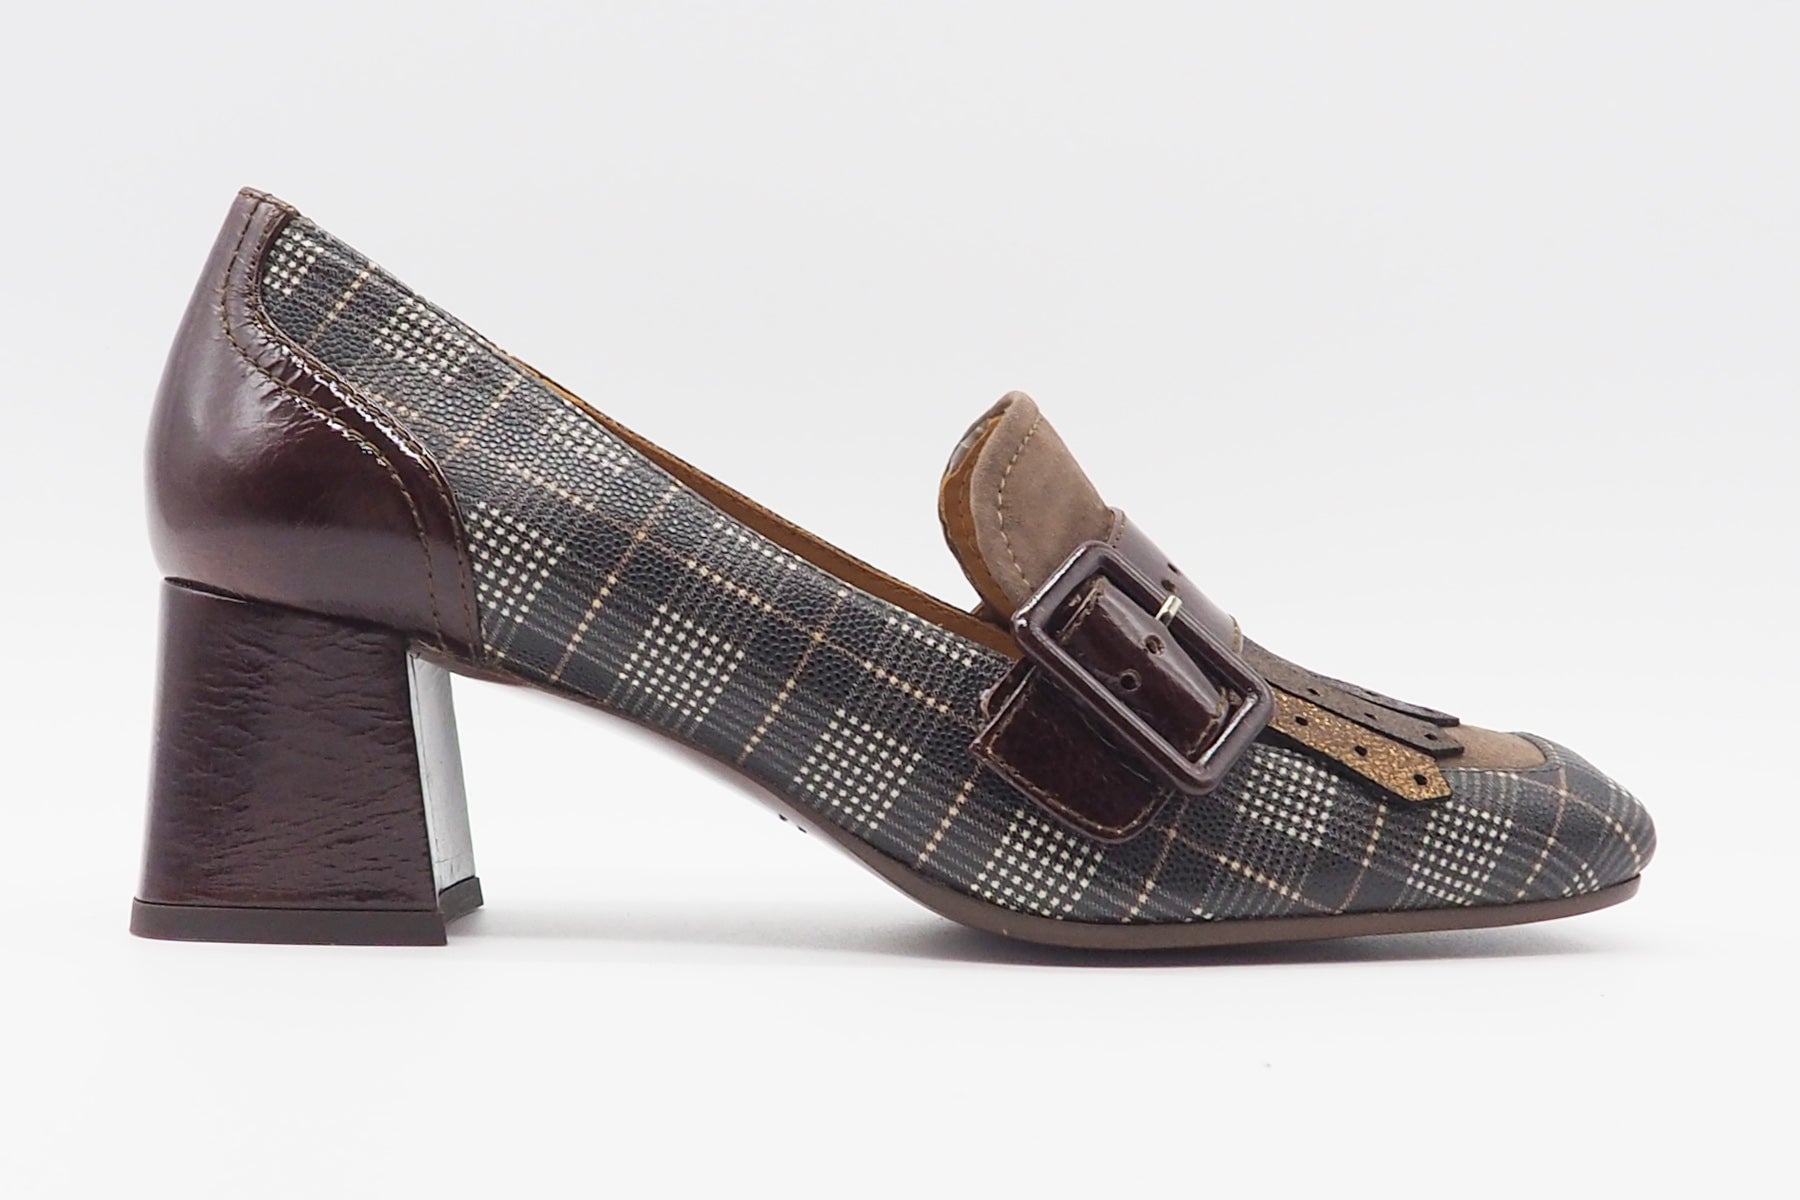 Damen Loafer aus bedrucktem Leder in Brauntönen - Absatz 5cm - Voyala Damen Loafers & Schnürer Chie Mihara 